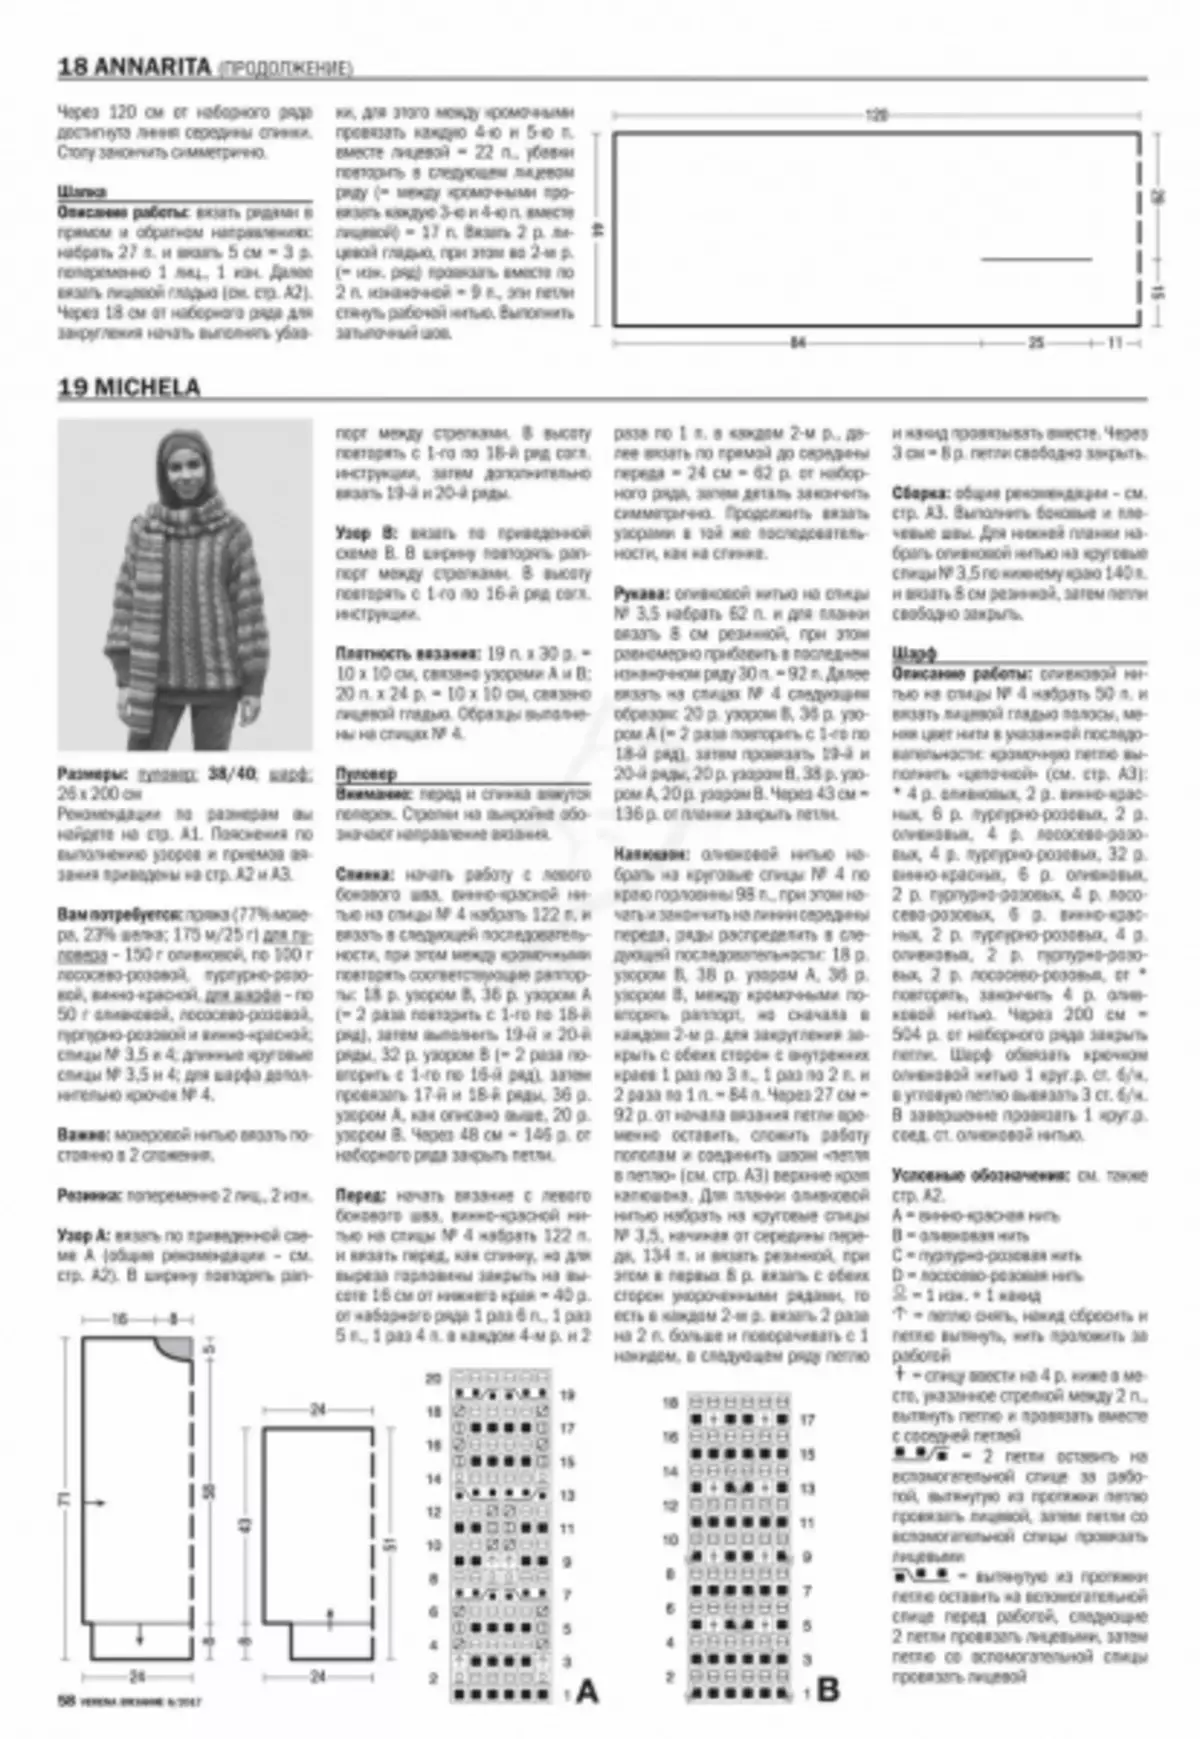 Verena 6 - 2019 časopis. Pletenje iz Burde